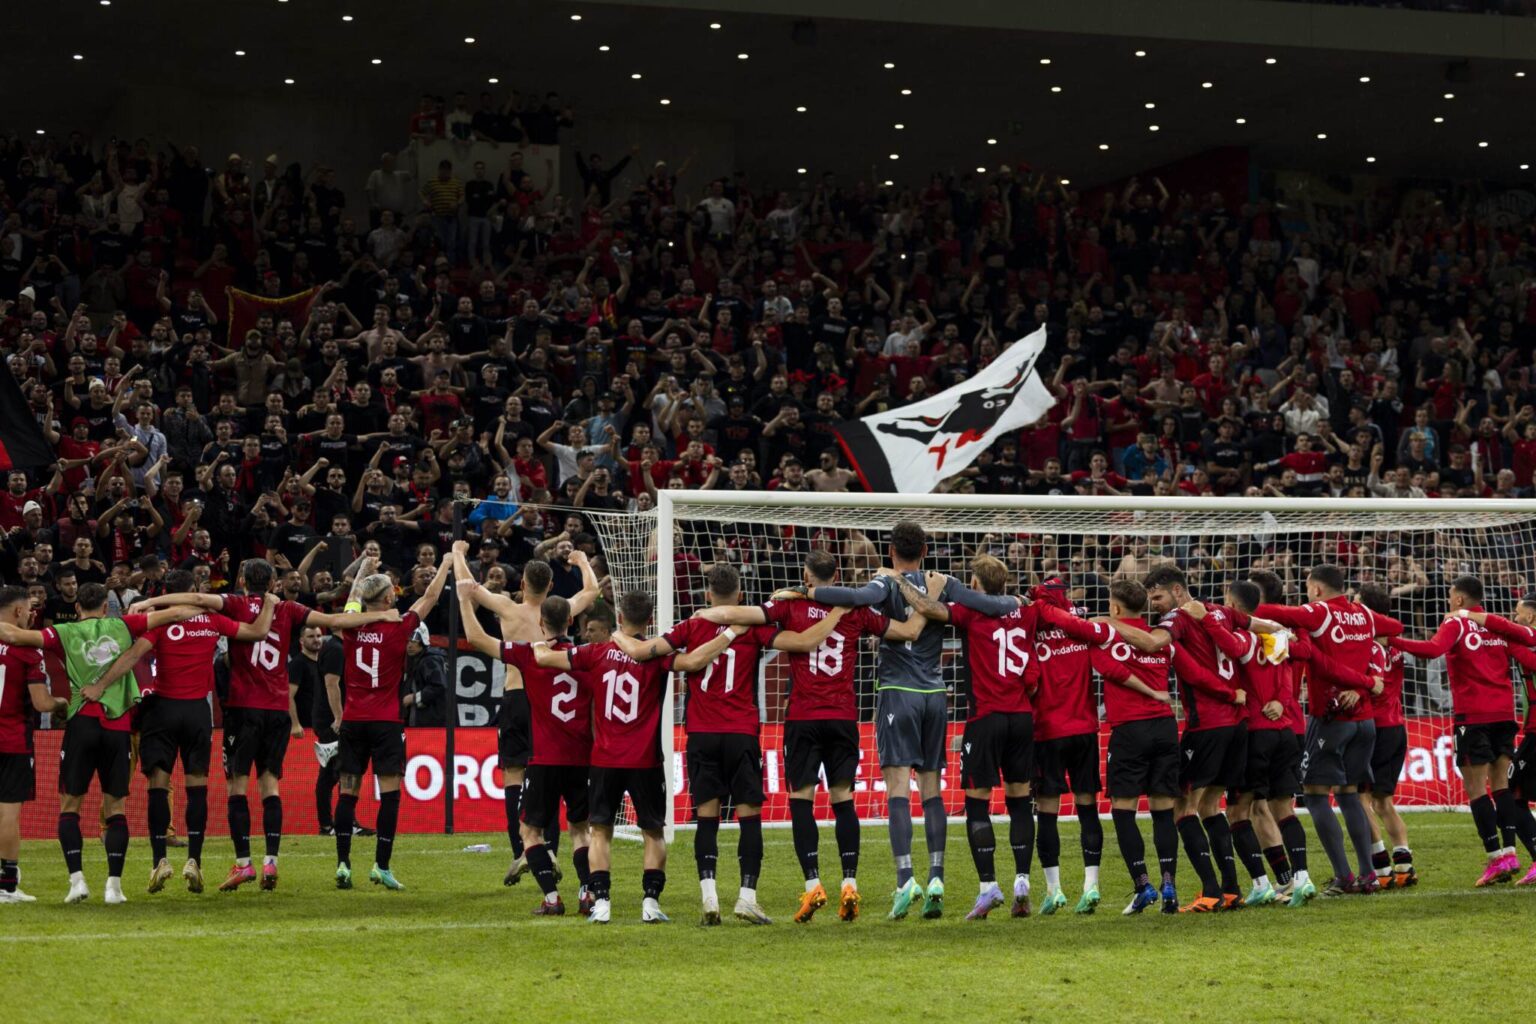 Shqipëria përballë Ukrainës, UEFA vendos ndeshja të luhet në stadium neutral